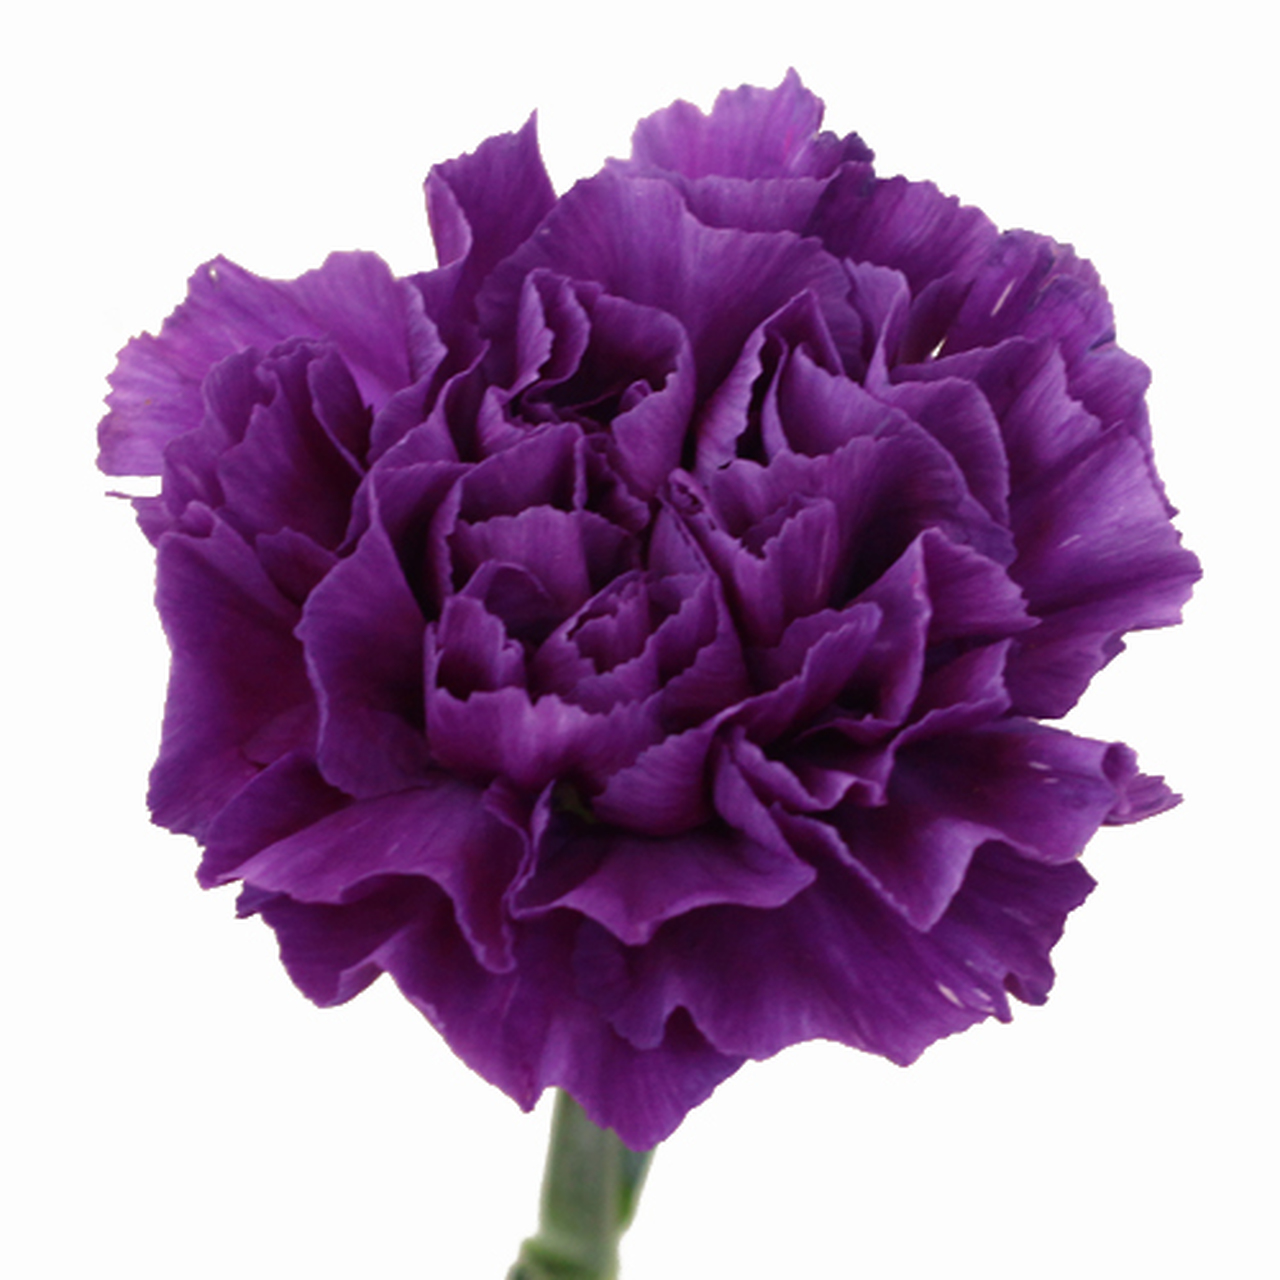 Tổng hợp hình ảnh hoa cẩm chướng tím đẹp nhất - [Kích thước hình ảnh: 1280x1280 px]